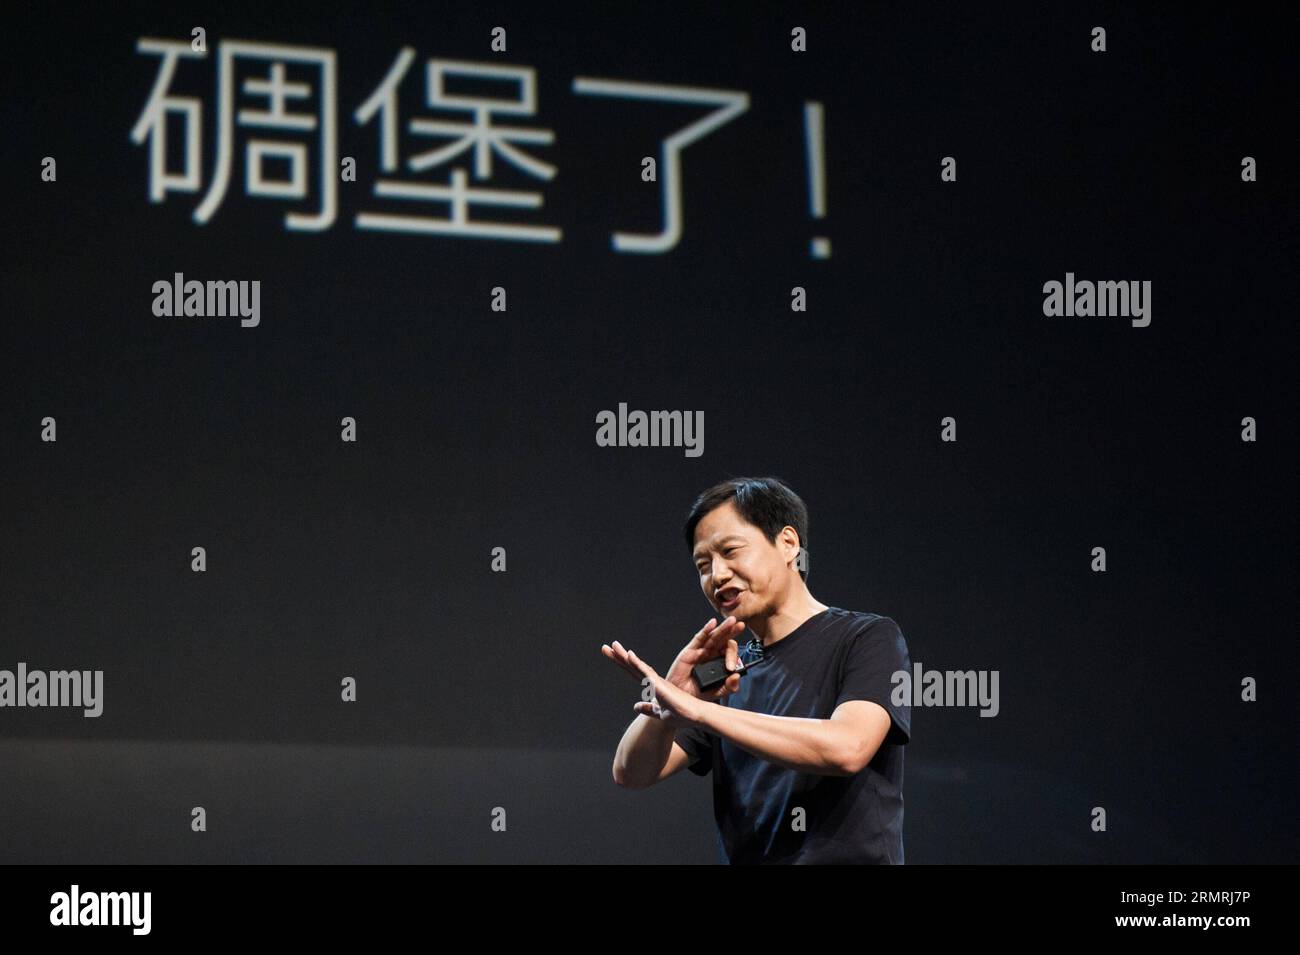 (140722) -- PECHINO, 22 luglio 2014 (Xinhua) -- lei Jun, CEO del produttore cinese di smartphone Xiaomi, introduce il processo di ricerca e sviluppo dei prodotti Xiaomi durante la conferenza annuale sulla distribuzione dei nuovi prodotti tenutasi a Pechino, capitale della Cina, il 22 luglio 2014. Xiaomi ha rilasciato il suo nuovo prodotto per smartphone Mi4 in occasione del lancio annuale del nuovo prodotto martedì. (Xinhua/Zhang Jin) (yxb) CHINA-BEIJING-XIAOMI-NEW PRODUCT(CN) PUBLICATIONxNOTxINxCHN Pechino 22 luglio 2014 XINHUA lei jun CEO del produttore cinese di smartphone Xiaomi introduce il processo di ricerca e sviluppo di Xiaomi Products du Foto Stock